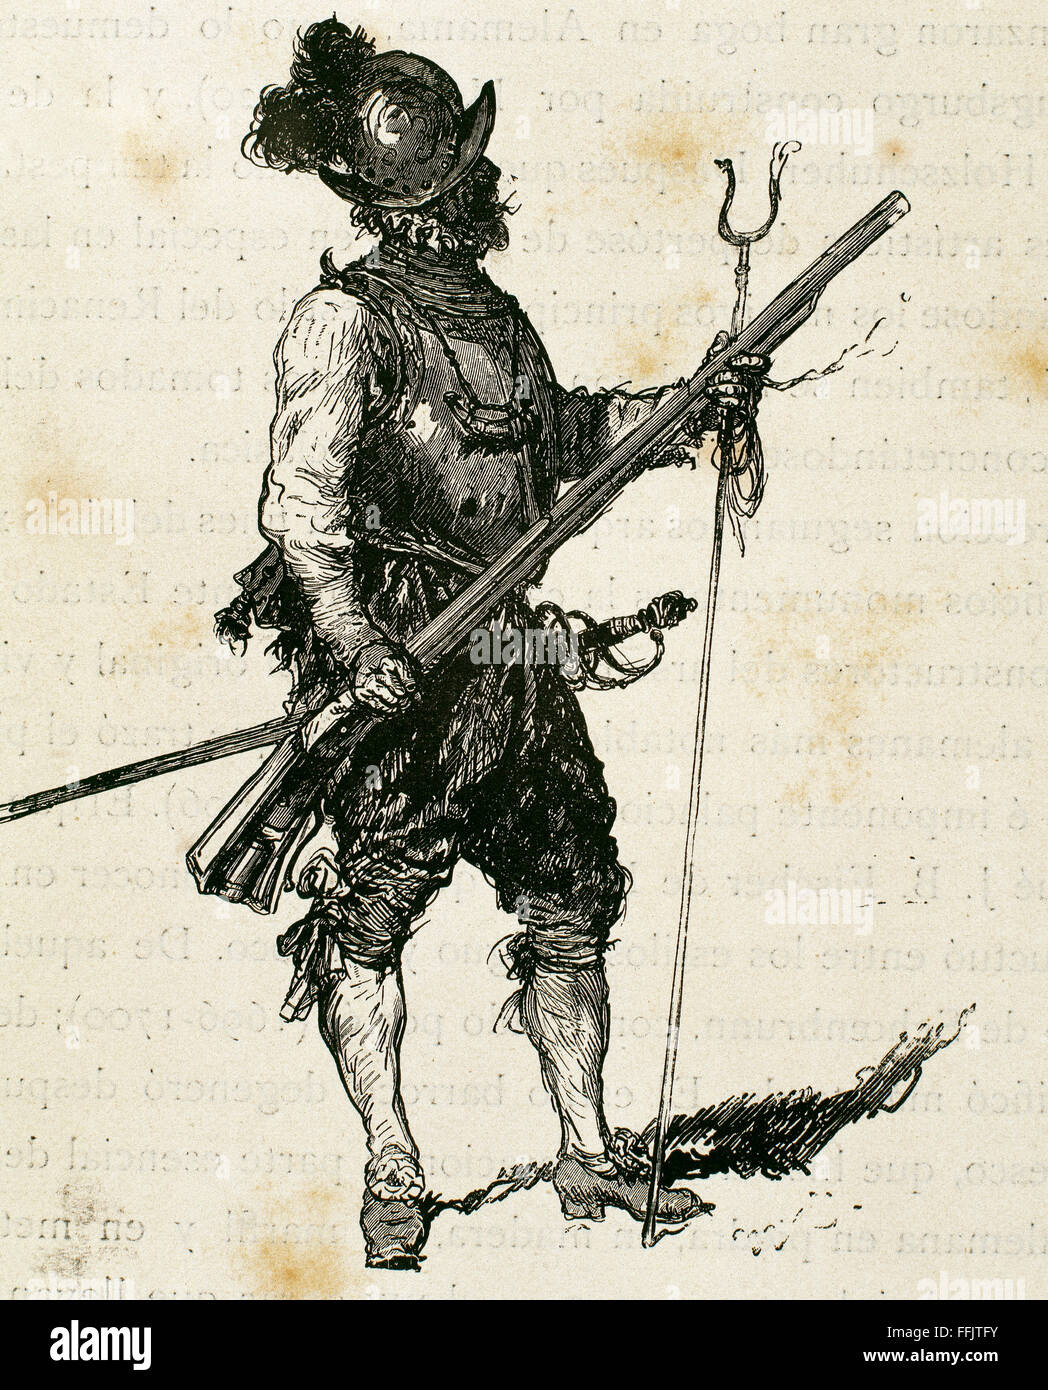 Arquebusier. Soldat, bewaffnet mit einer Arkebuse. Infanterie-Regiment. 16. Jahrhundert. Kupferstich, 19. Jahrhundert. Stockfoto